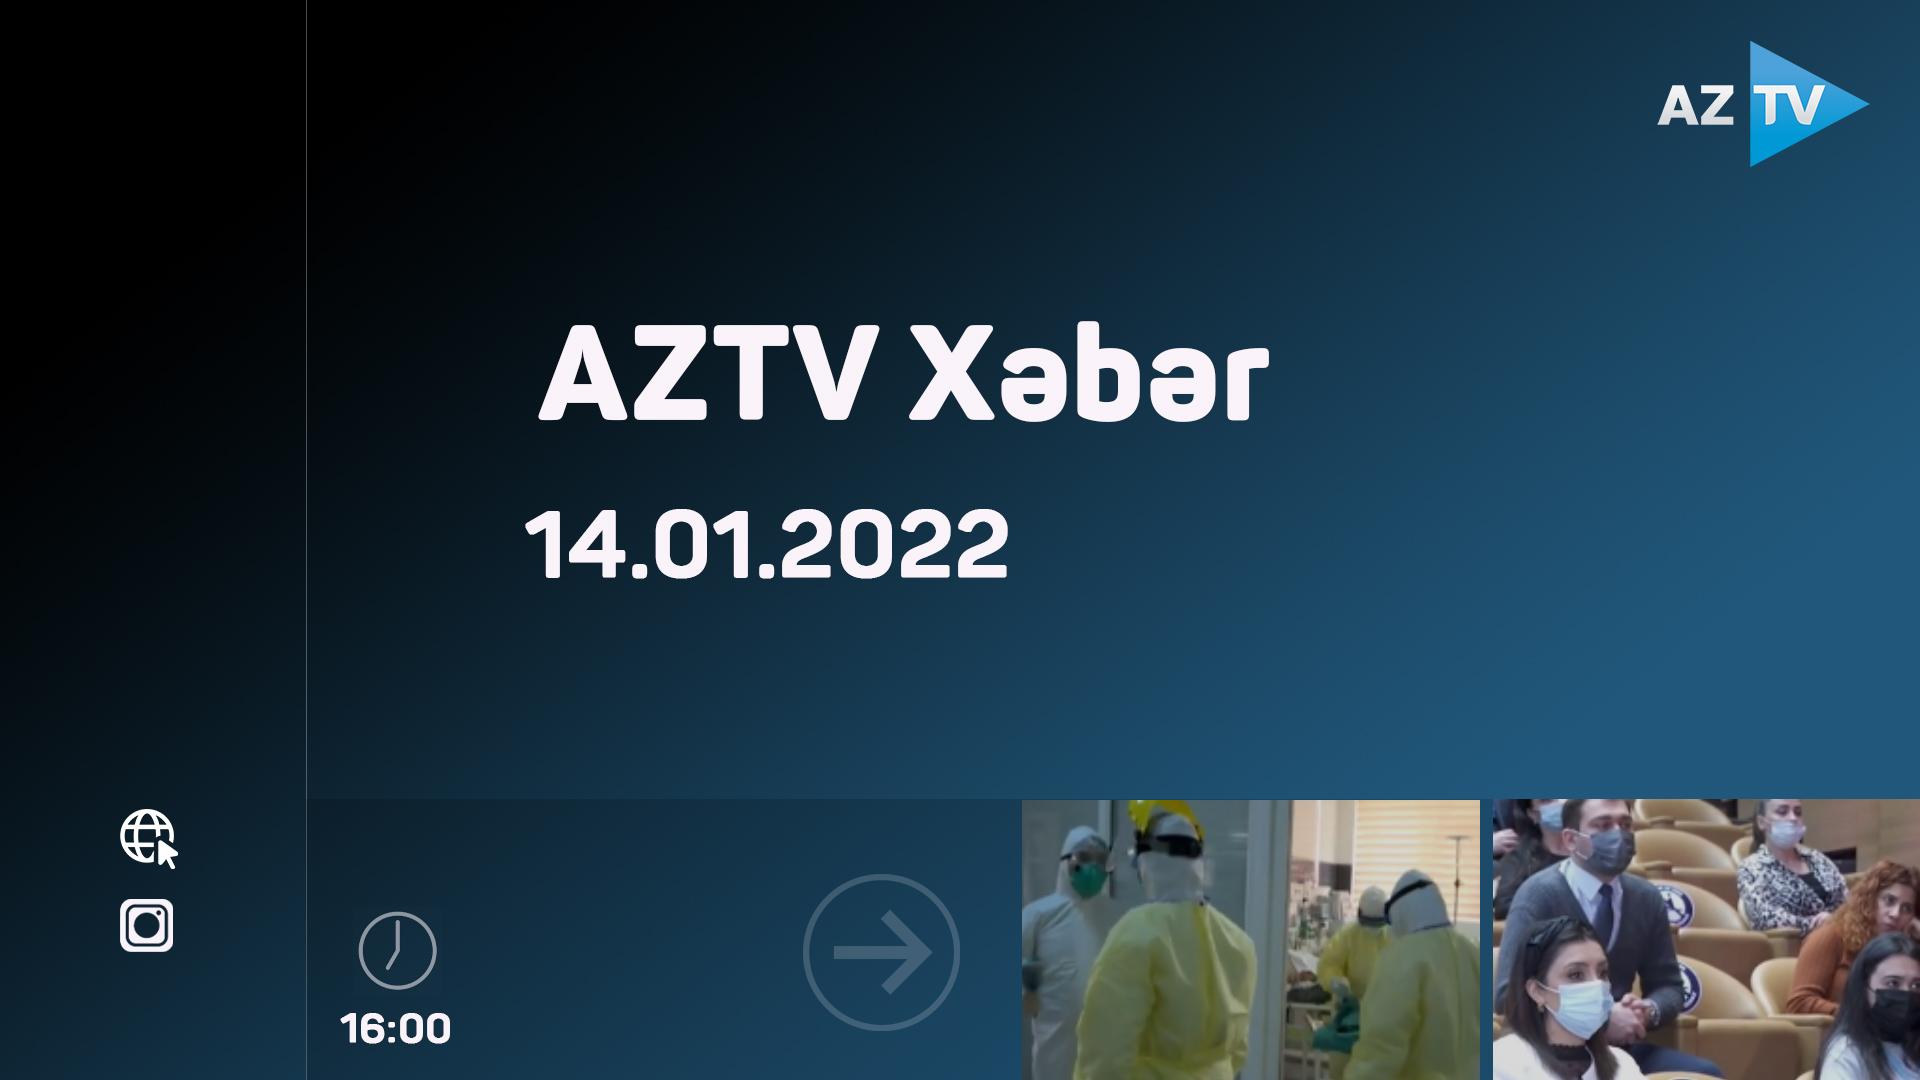 "AZTV Xəbər"(16:00) 14.01.2022